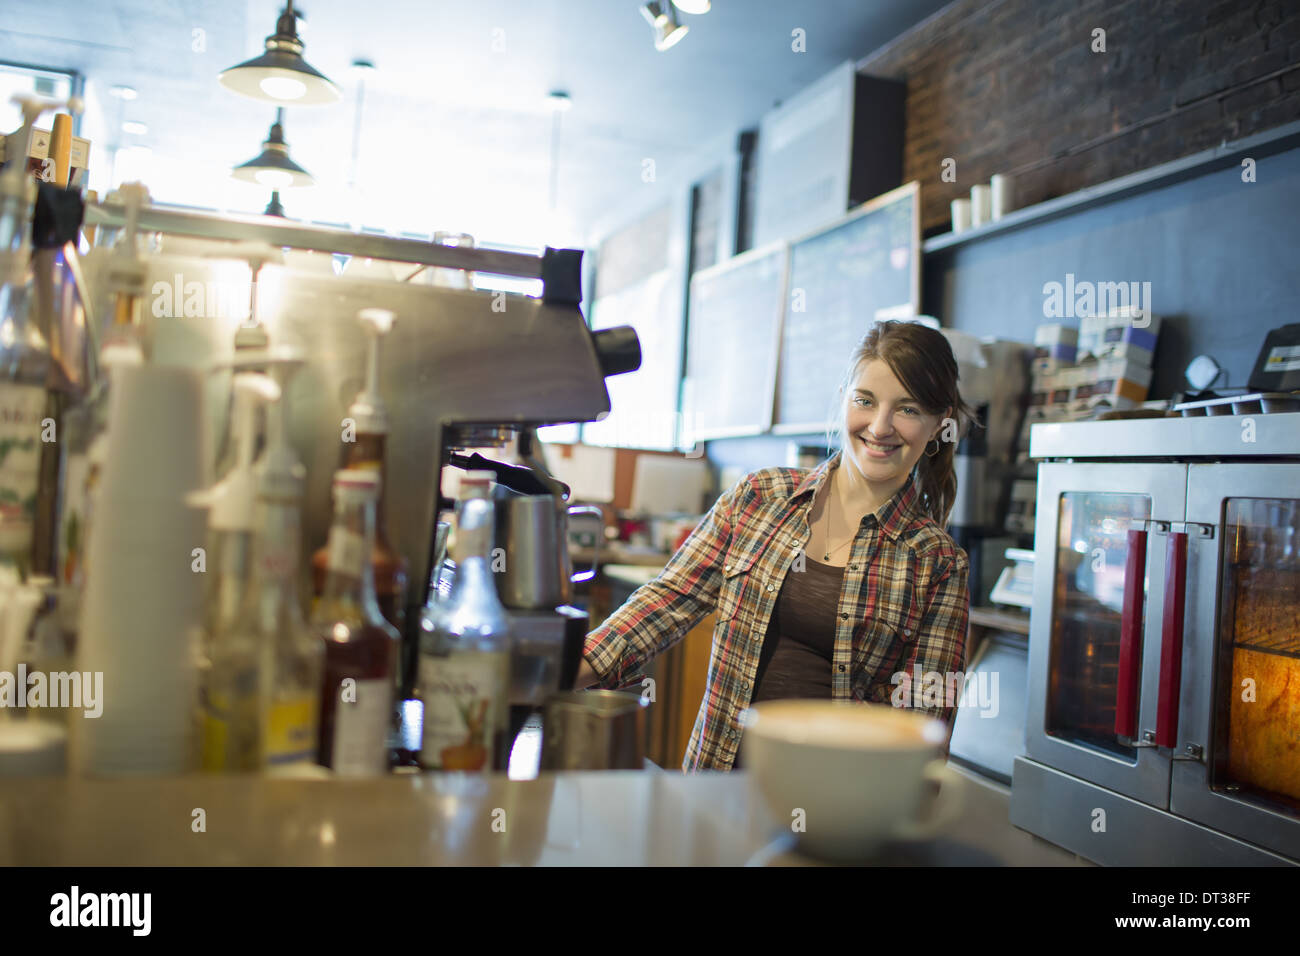 Una persona, il barista, dietro il contatore in una caffetteria. Una macchina per caffè cappuccino sul contatore. Foto Stock